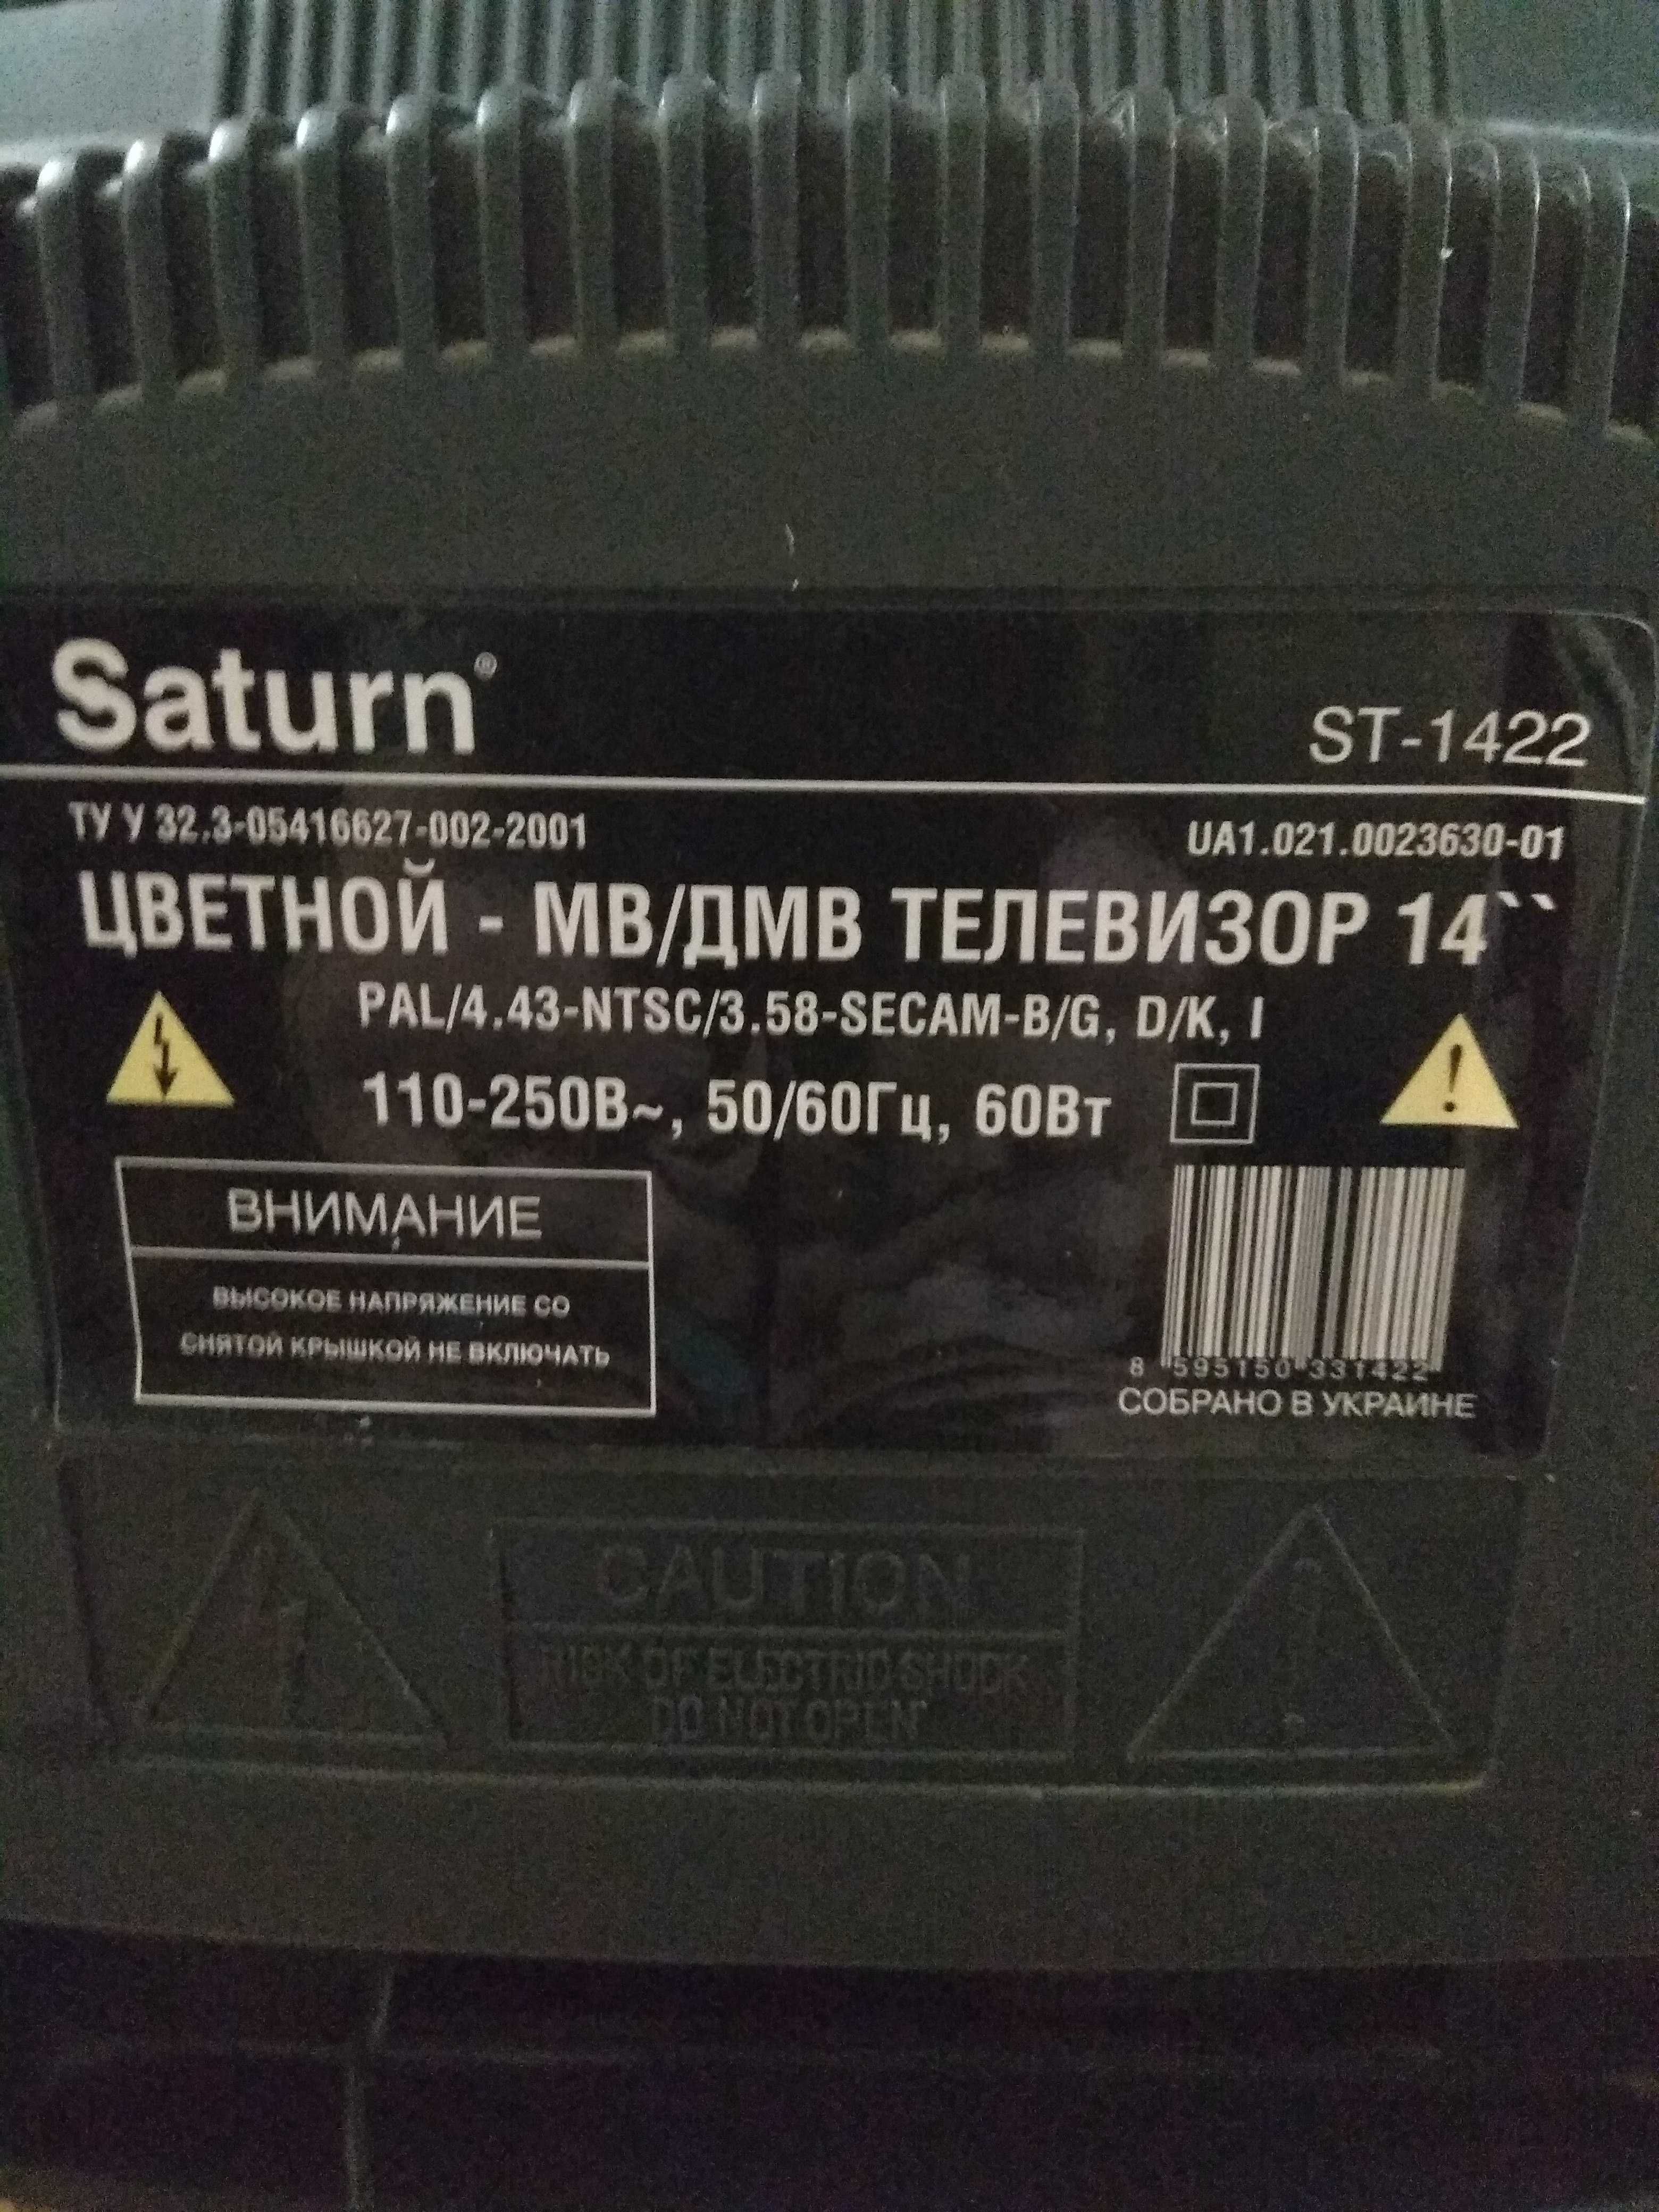 цветной телевизор Сатурн СТ-1422 Saturn ST-1422 в отличном состоянии